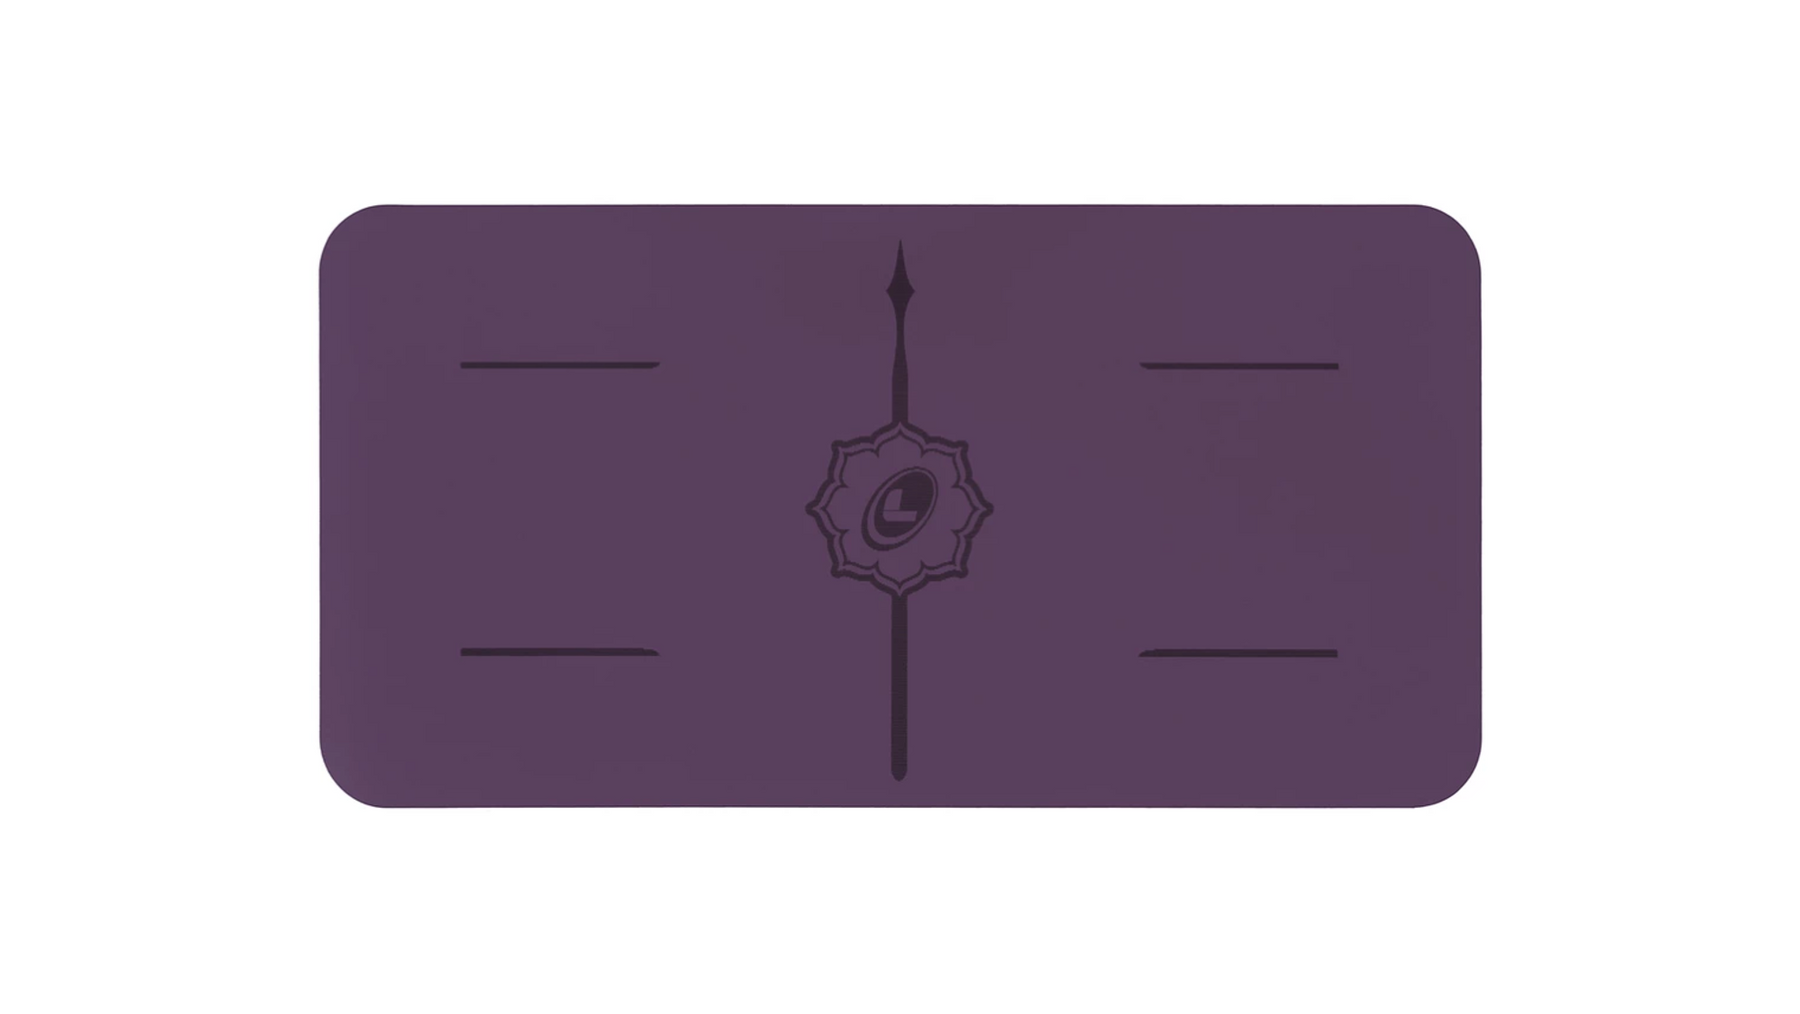 Liforme Yoga Pad - Purple Earth - goYOGA Outlet